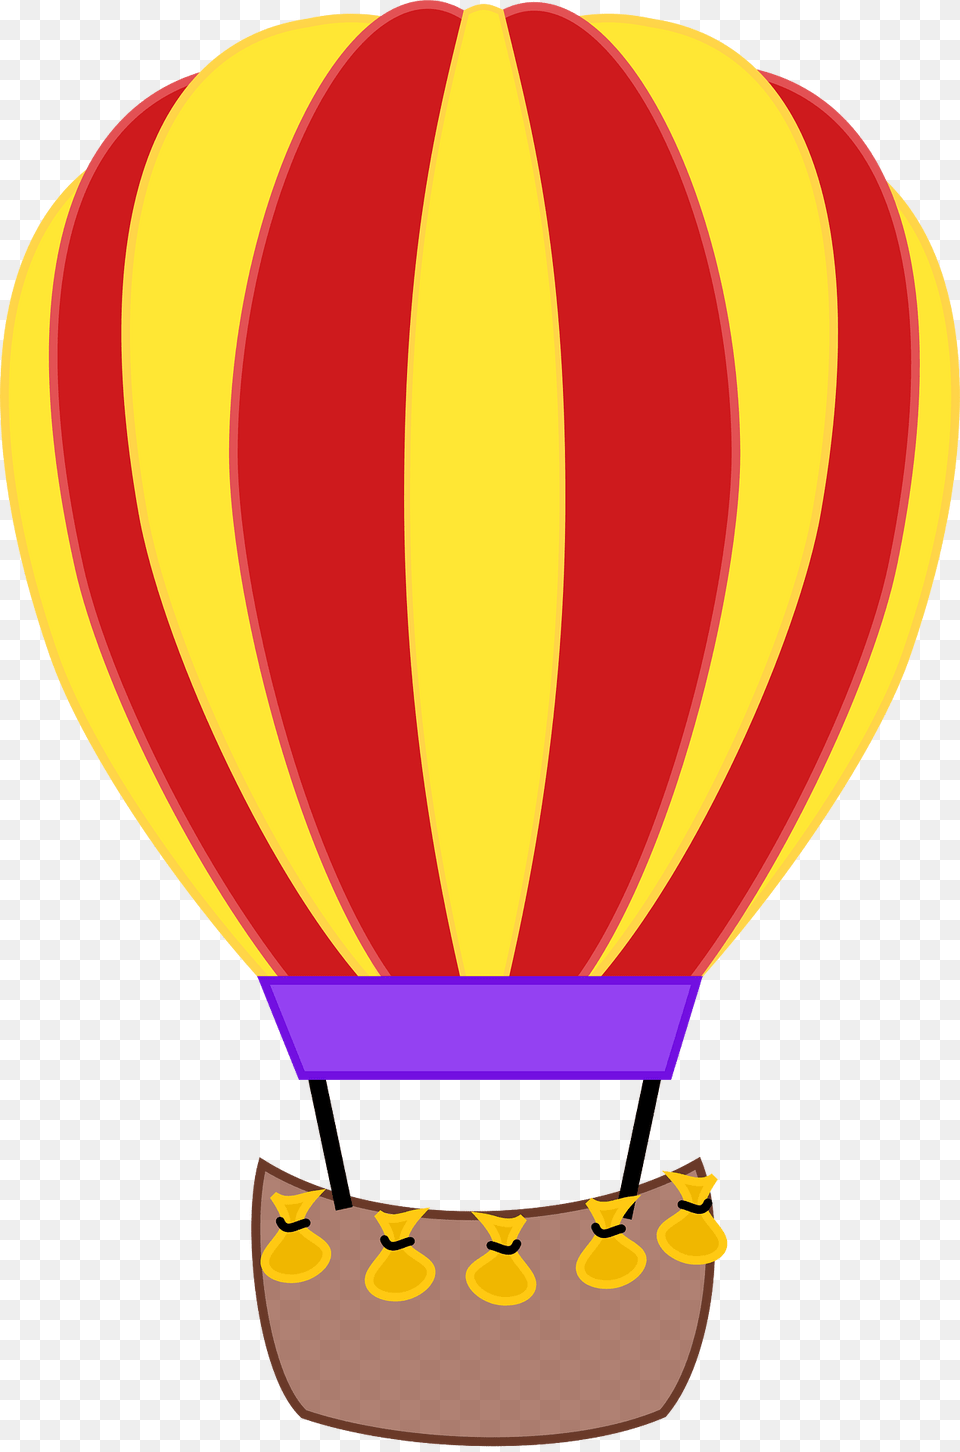 Balloon Clipart, Aircraft, Hot Air Balloon, Transportation, Vehicle Free Png